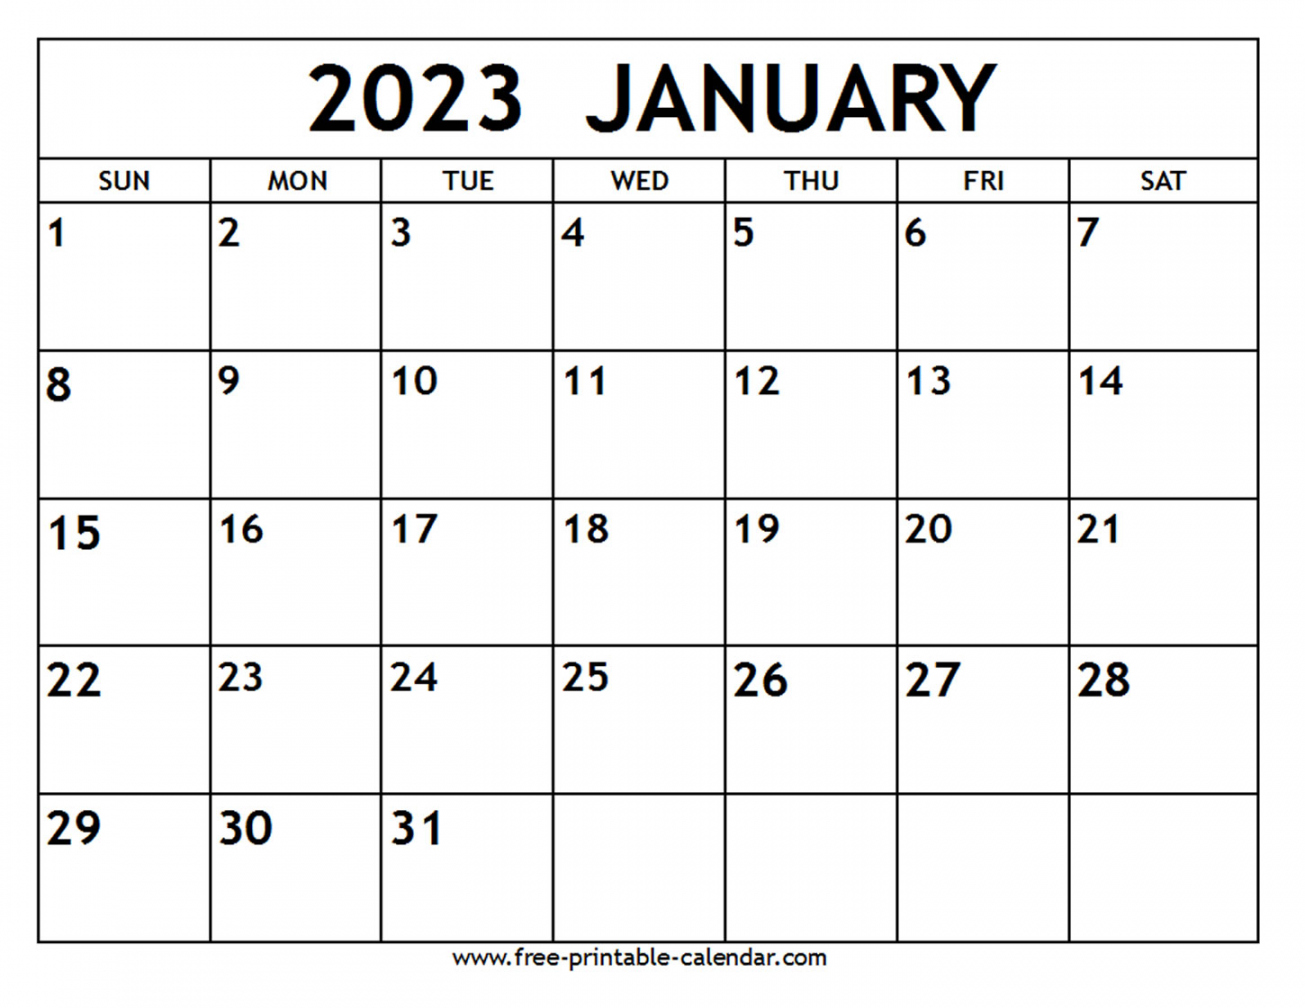 January 2023 Printable Calendar Free - Printable - January  Calendar - Free-printable-calendar